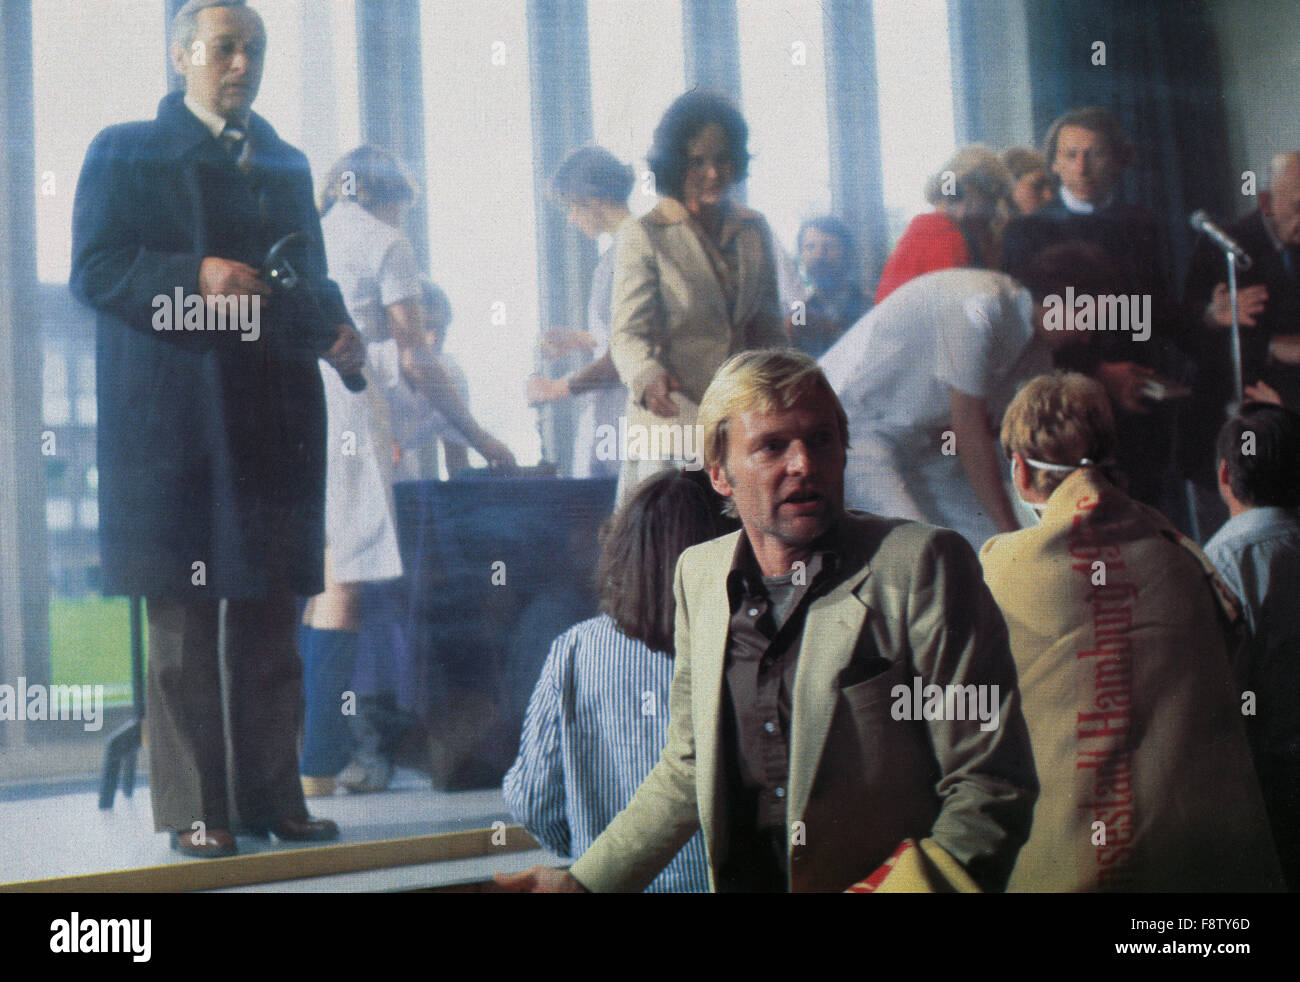 Sterben Sie Hamburger sichtbar, auch bekannt als: La Maladie de Hambourg, Deutschland 1979, Regie: Peter Fleischmann, Szenenfoto Stockfoto